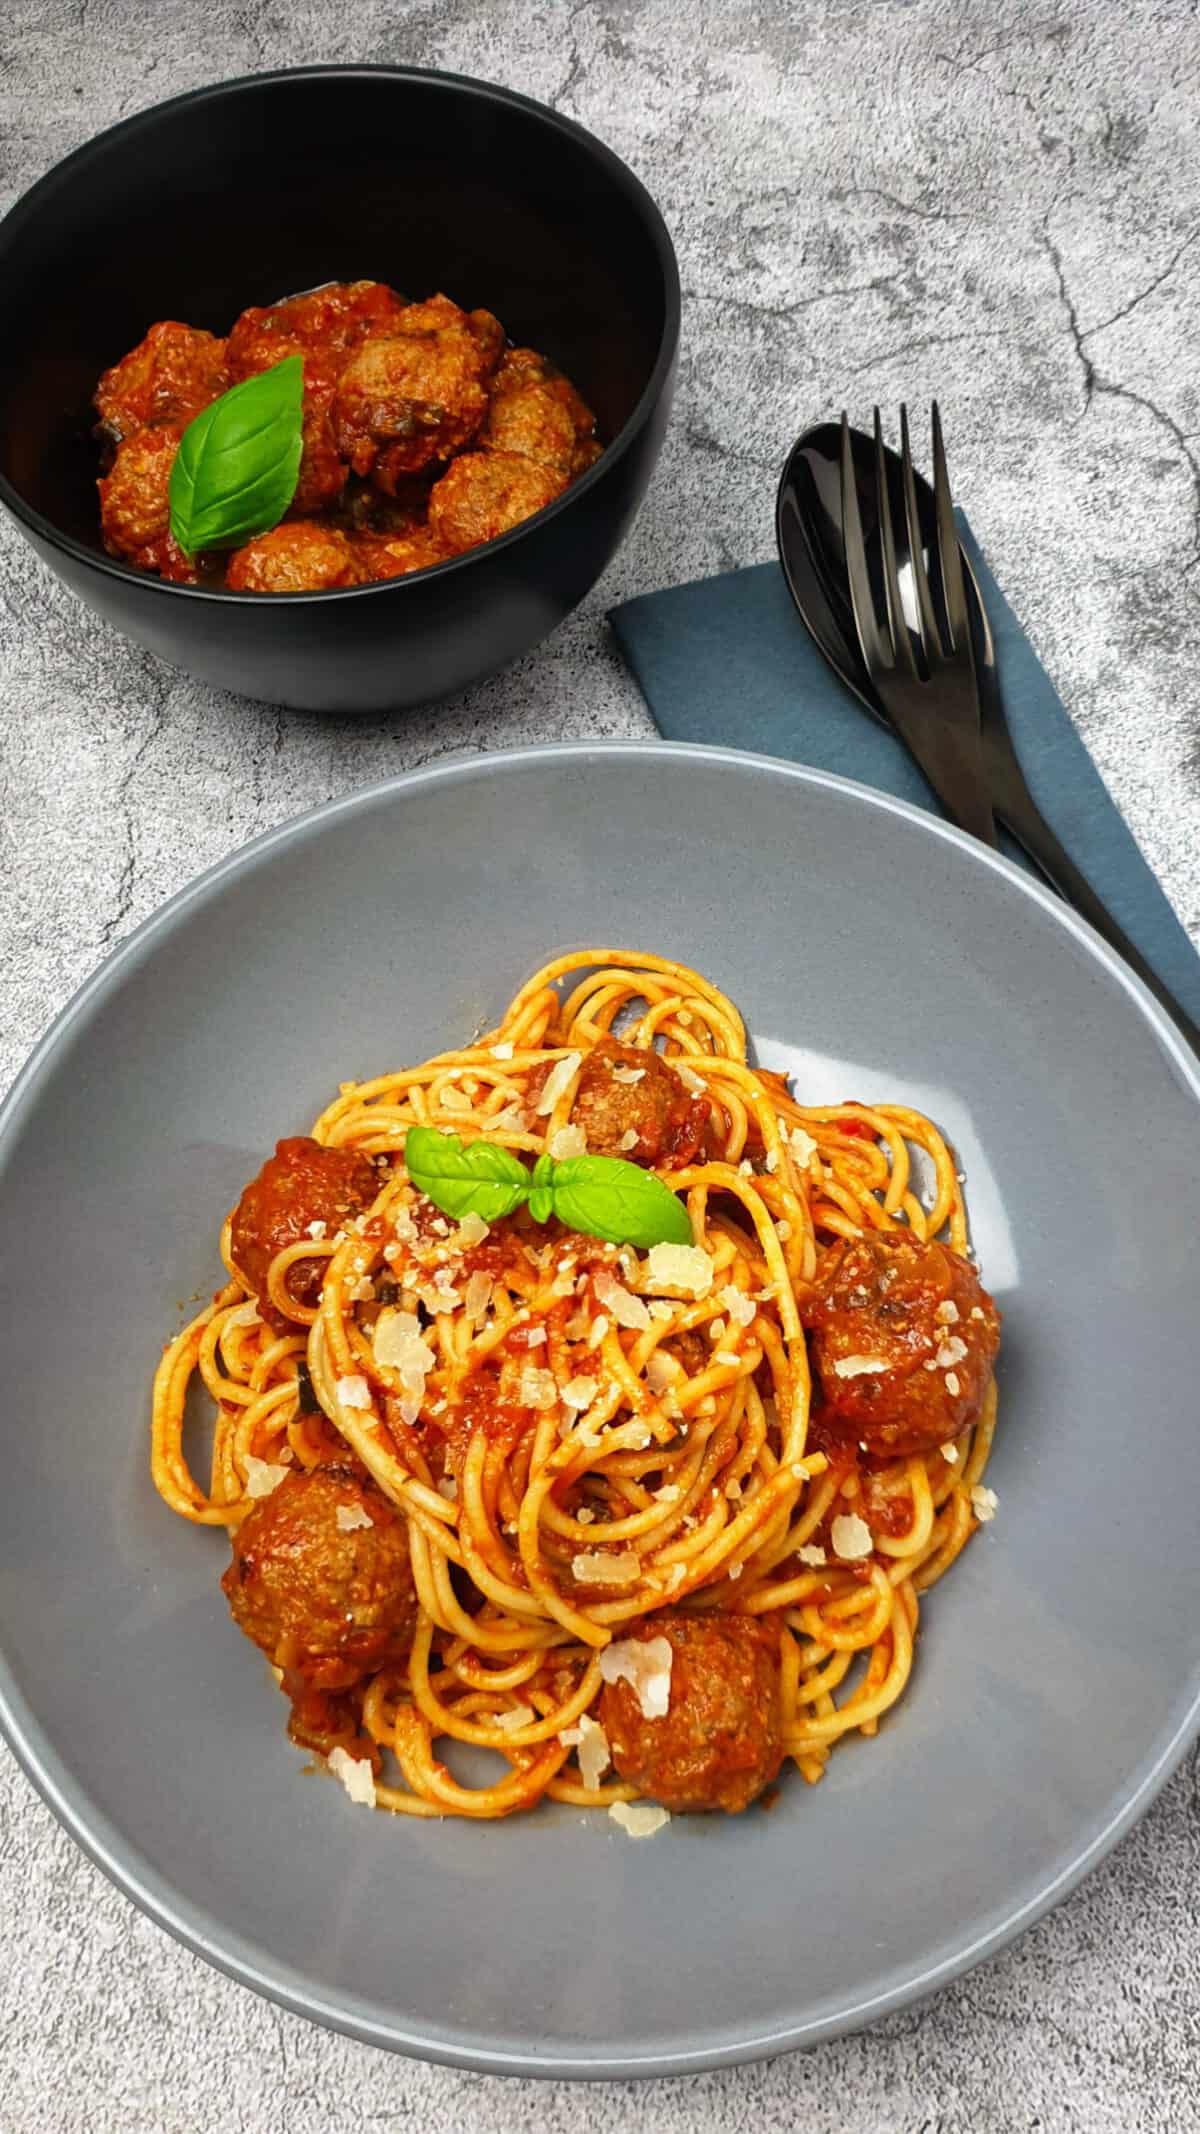 Italienische Hackbällchen mit Spaghetti in einer braunen Schale angerichtet. Mit Parmesan bestreut.